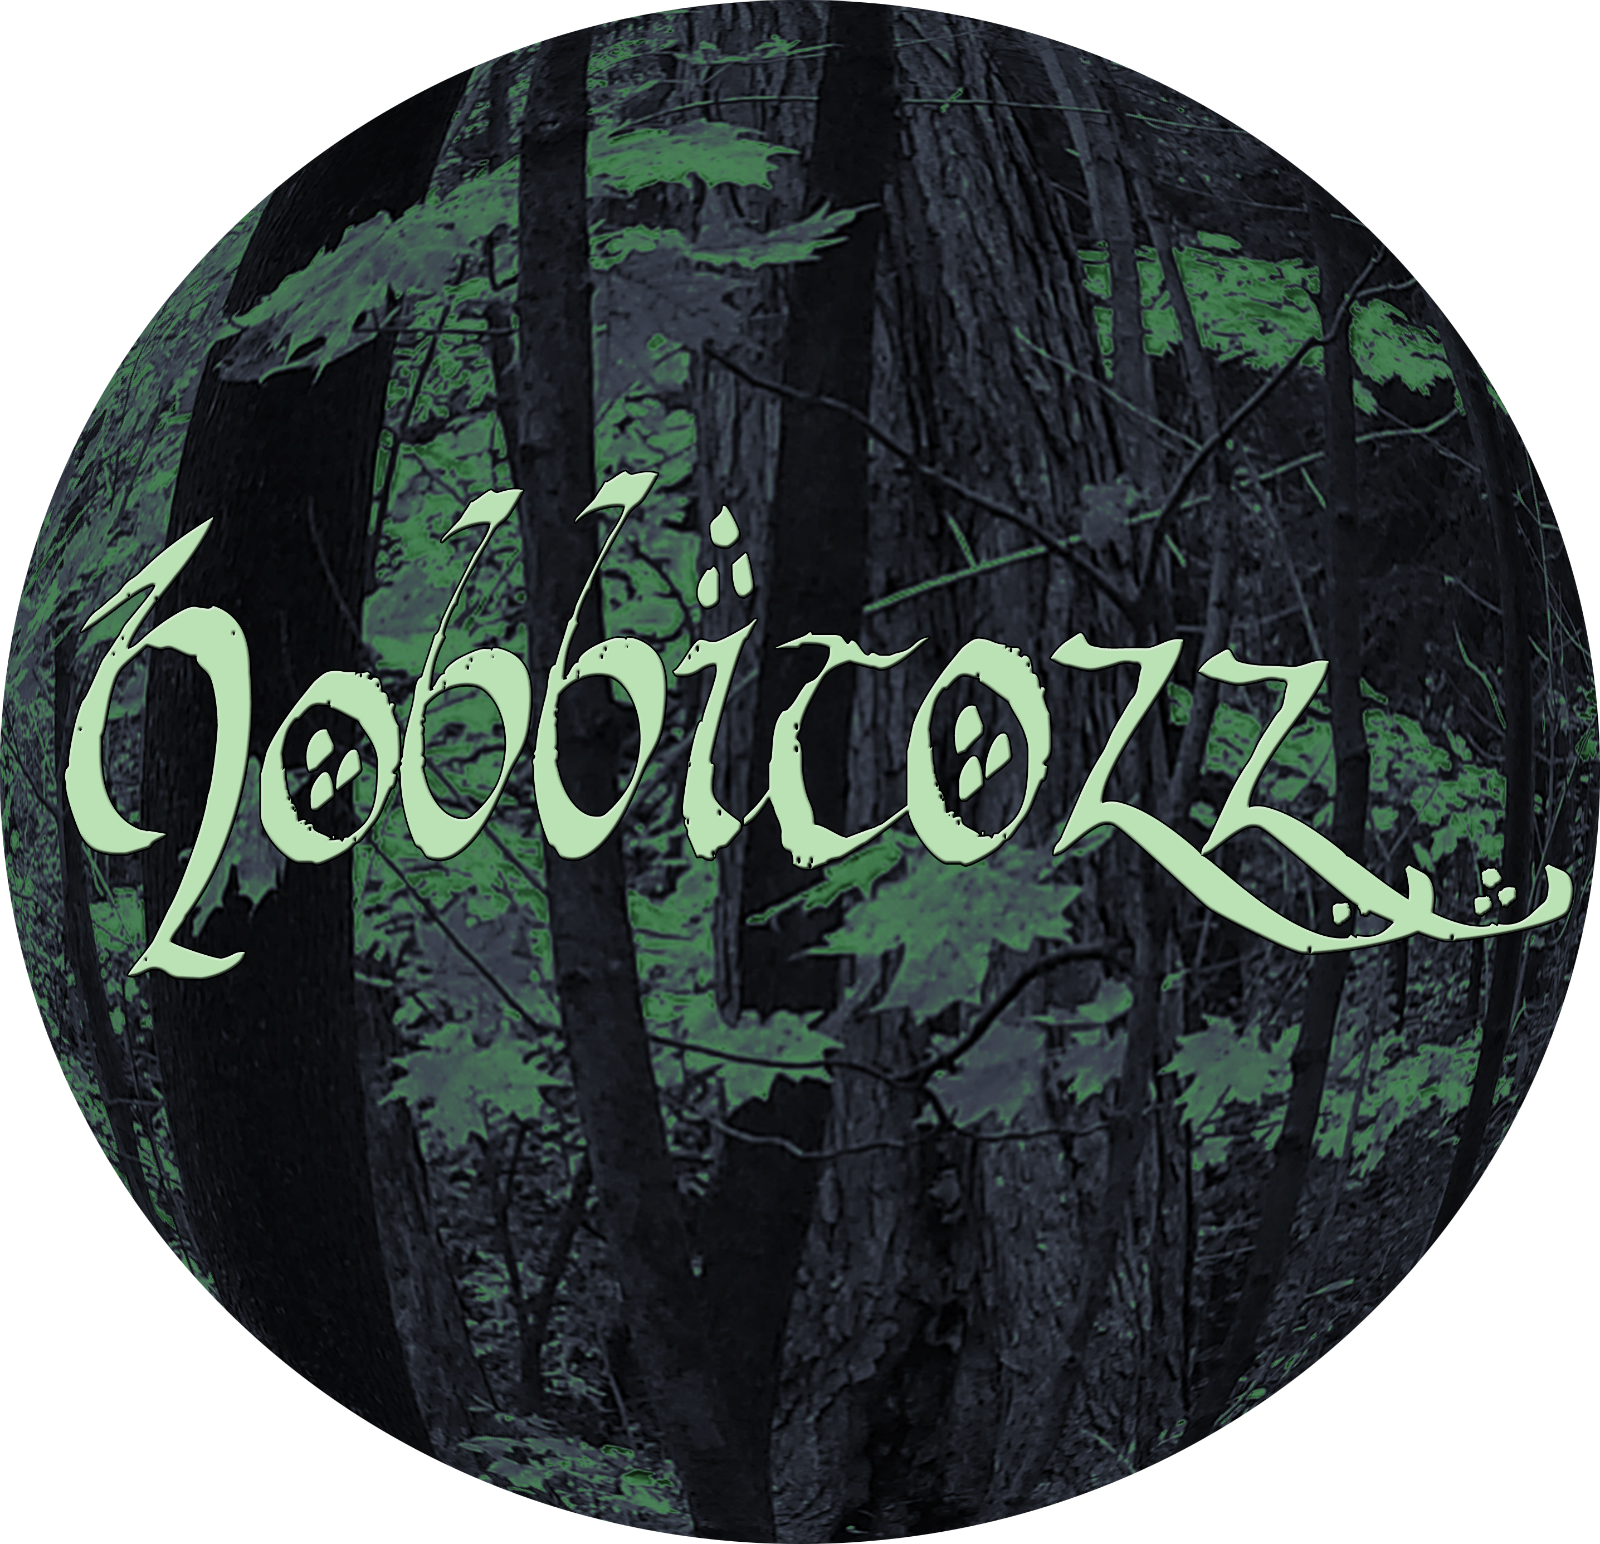 Hobbitozz album cover